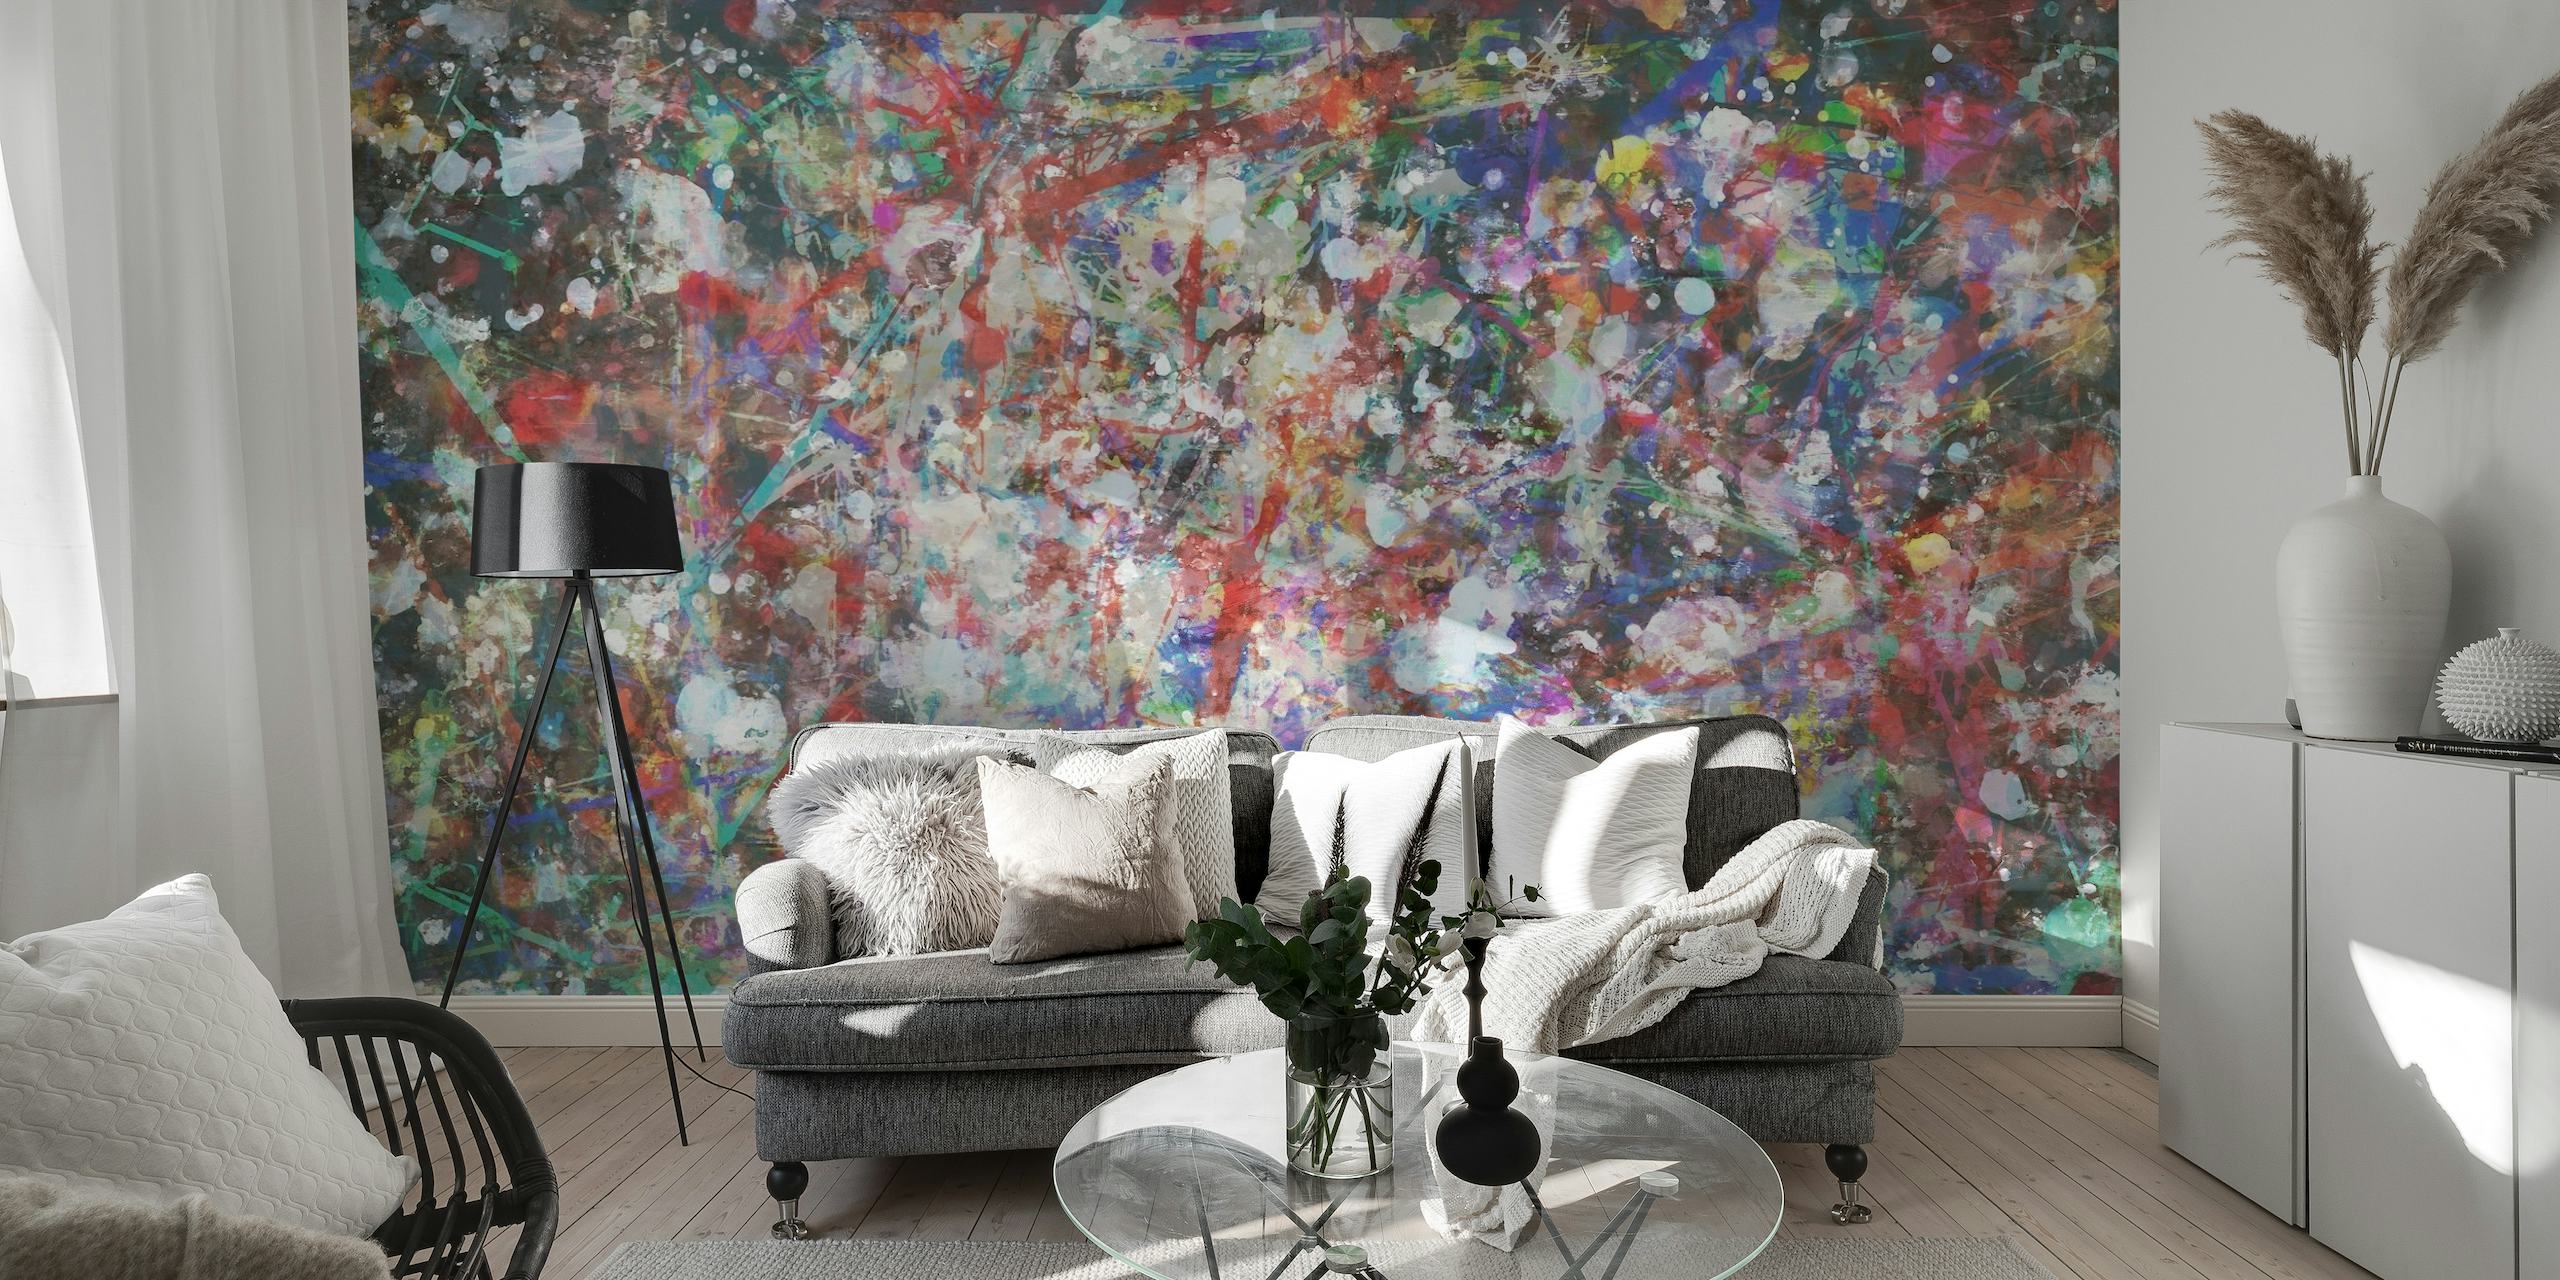 Abstrakt vægmaleri med en farverig række af penselstrøg og malingsstænk